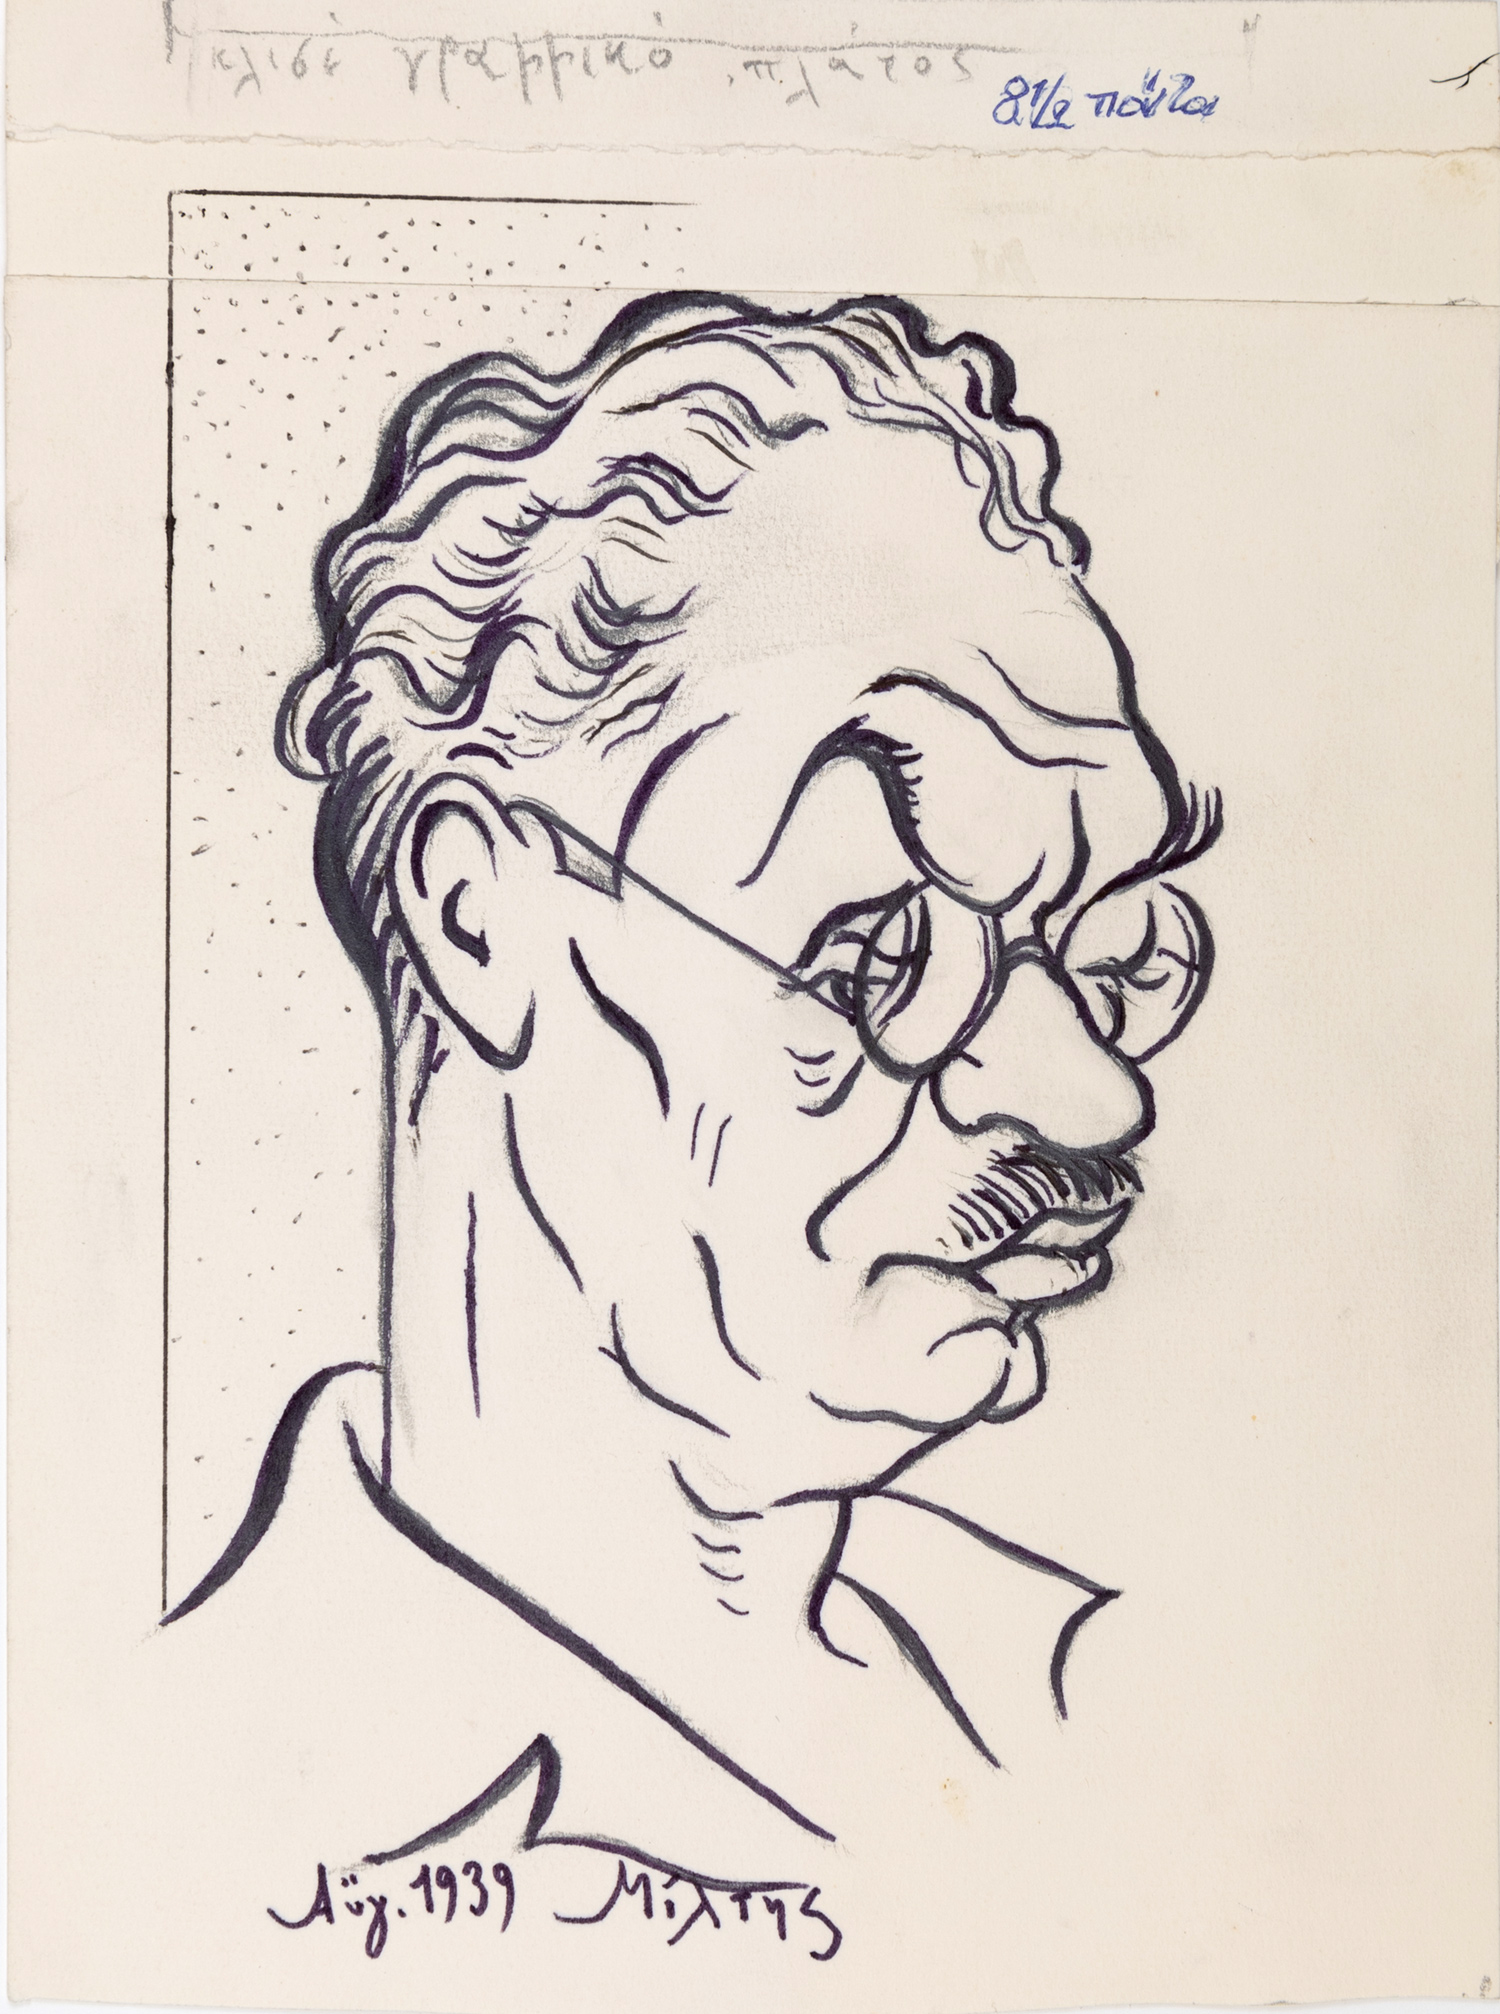 ΠΑΡΑΣΚΕΥΑΪΔΗΣ, Μίλτης, 1911-1999, φιλόλογος, δημοσιογράφος, ζωγράφος και σκιτσογράφος.